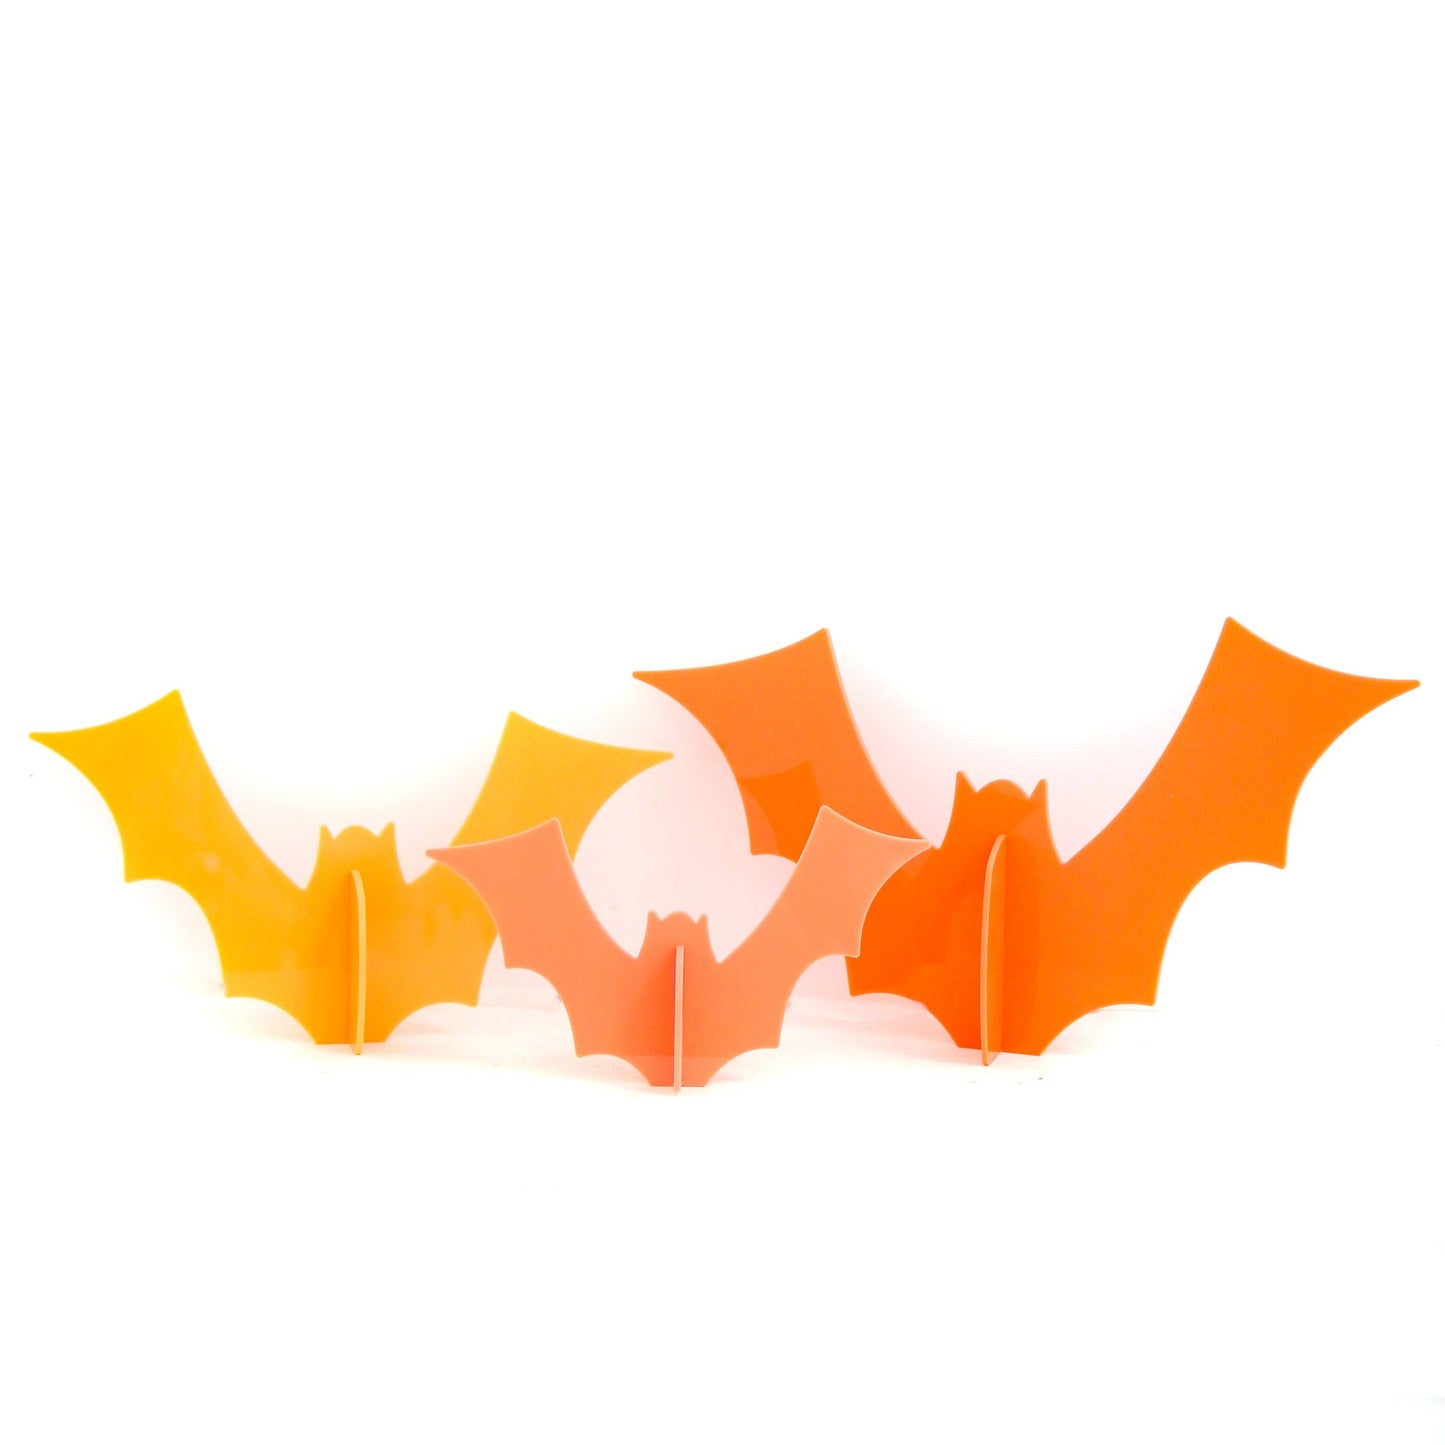 Coral and Orange Acrylic bat set of 3